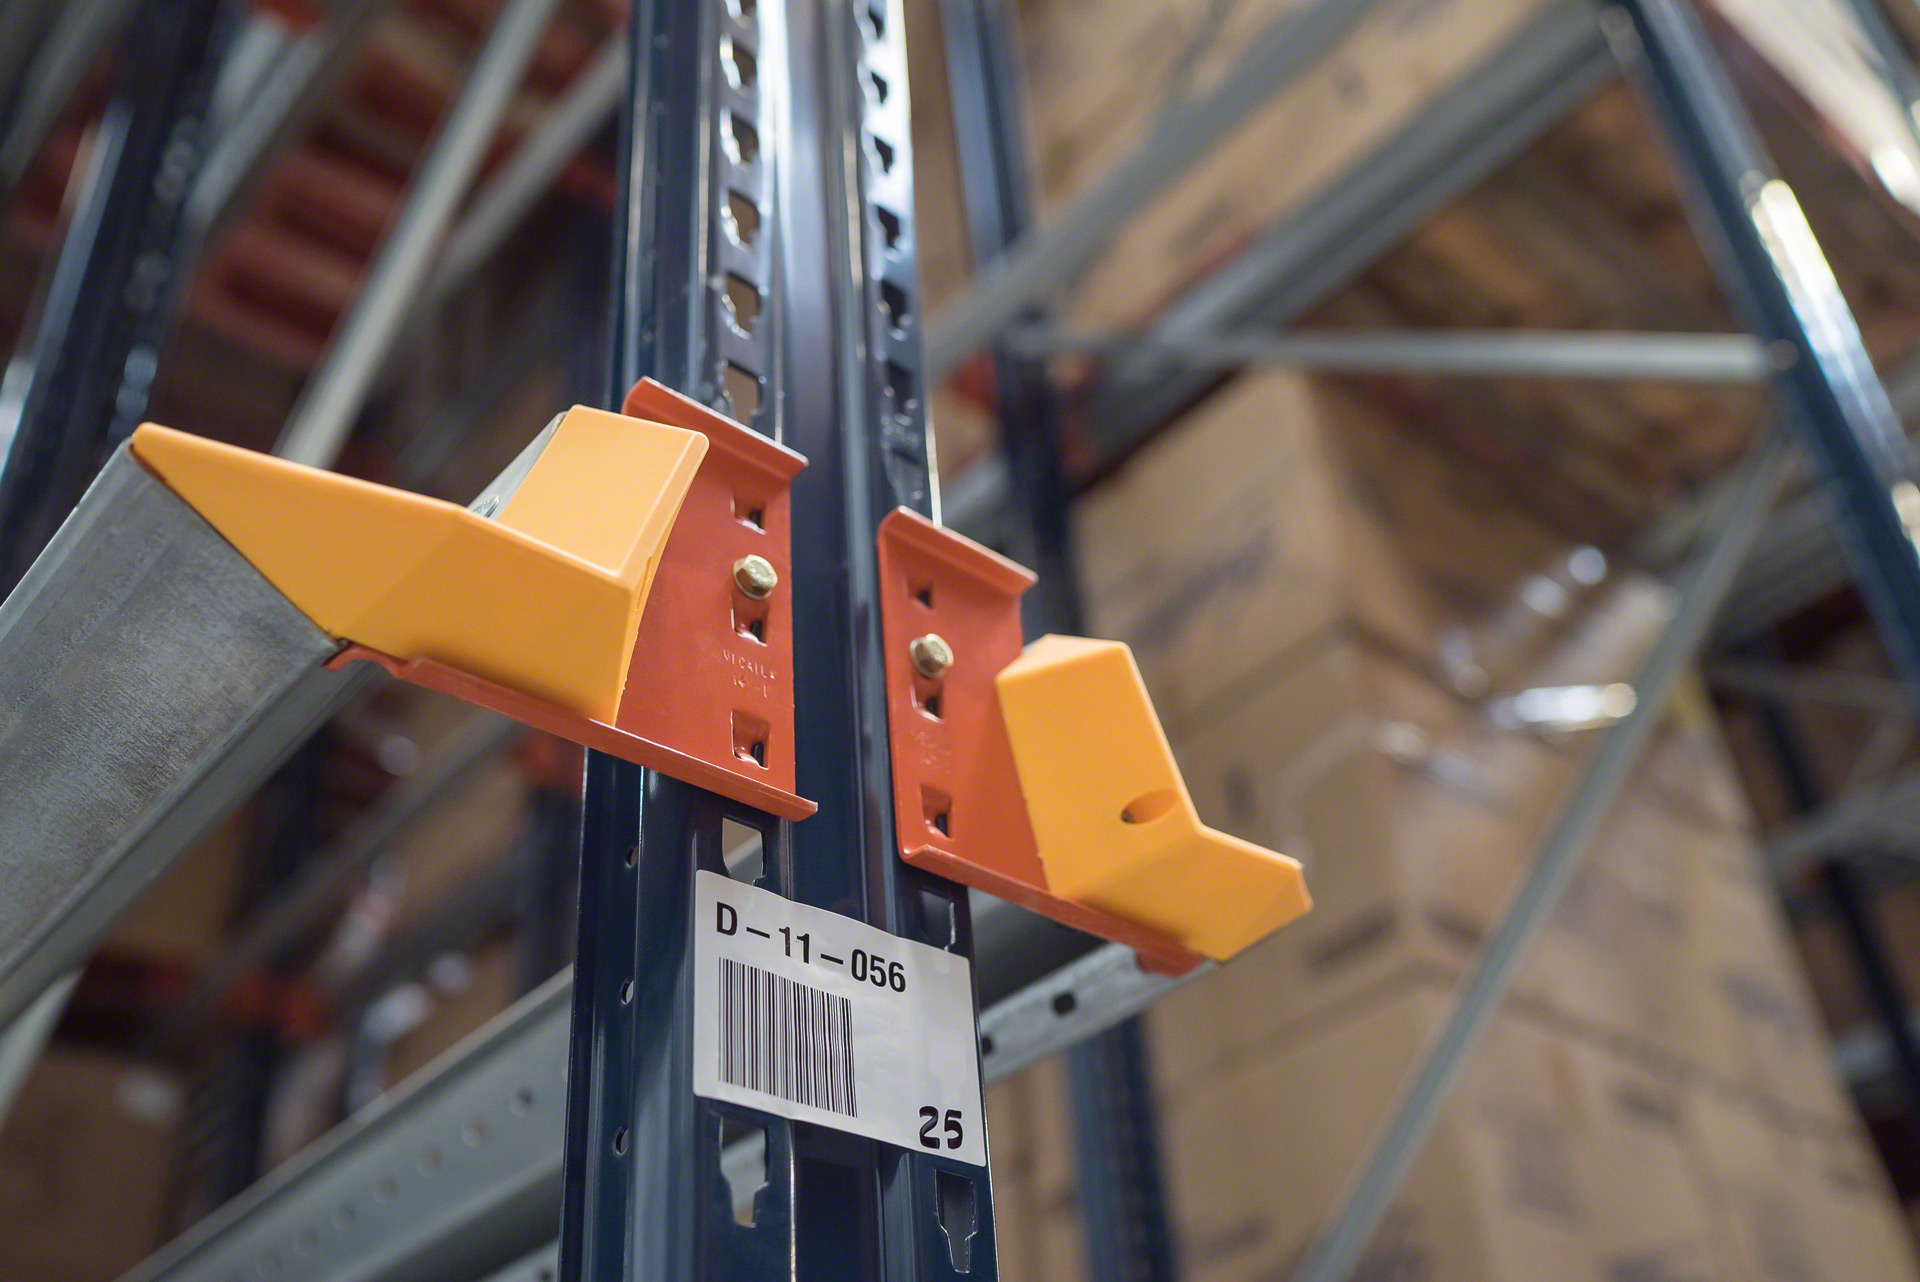 Palet merkezleyici, drive-in raf sisteminin önemli bir parçasıdır: Forkliftlerin malları taşımasını kolaylaştırır